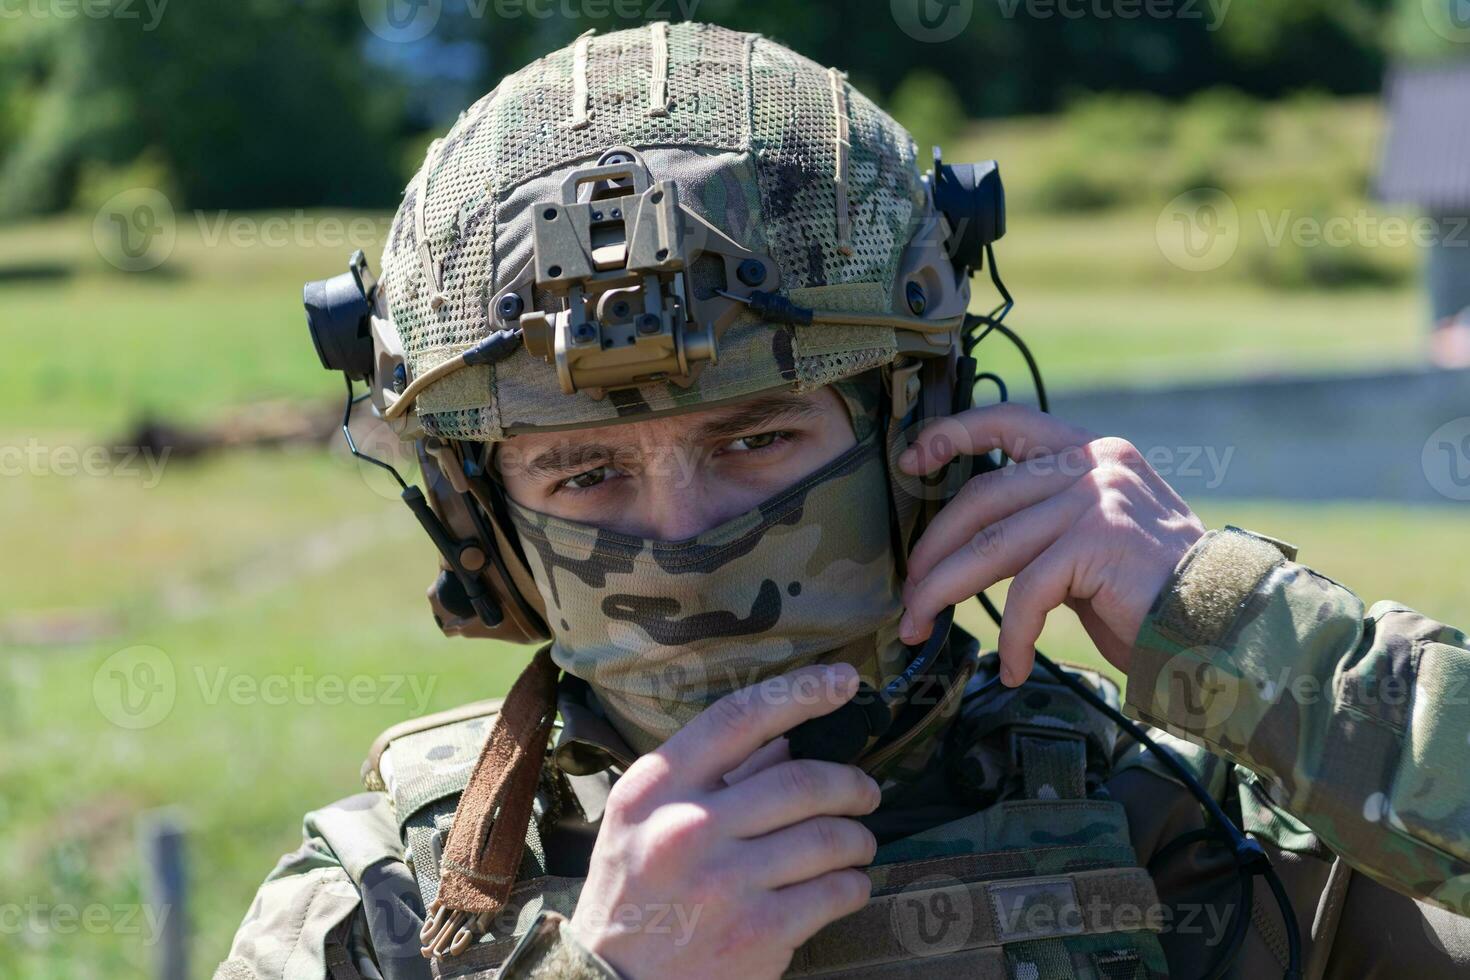 speciaal operaties soldaten team voorbereidingen treffen tactisch en communicatie uitrusting voor actie strijd. lang afstand scherpschutter team in controle uitrusting voor actie foto